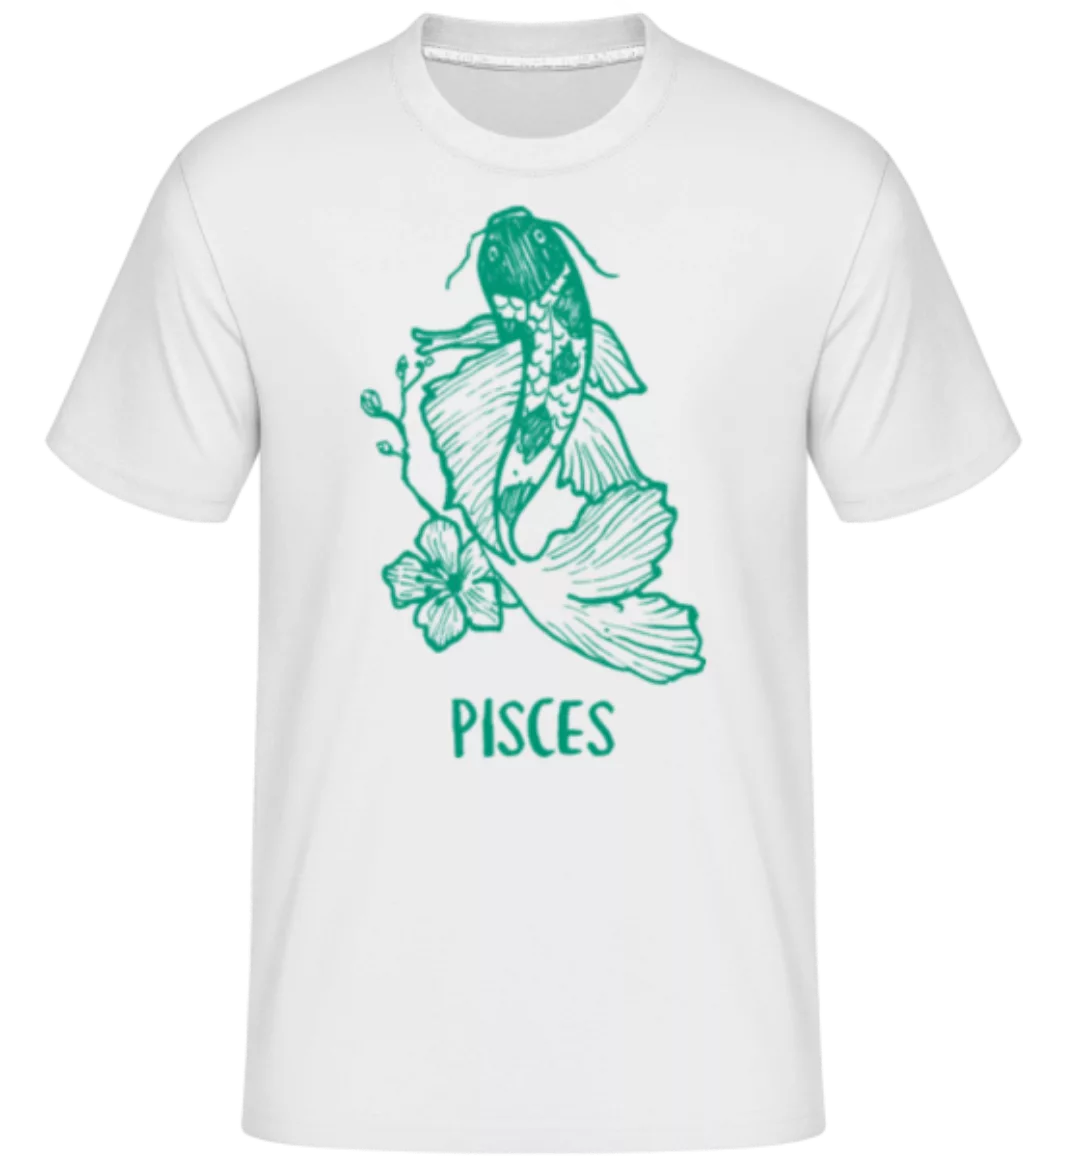 Scribble Style Zodiac Sign Pisces · Shirtinator Männer T-Shirt günstig online kaufen